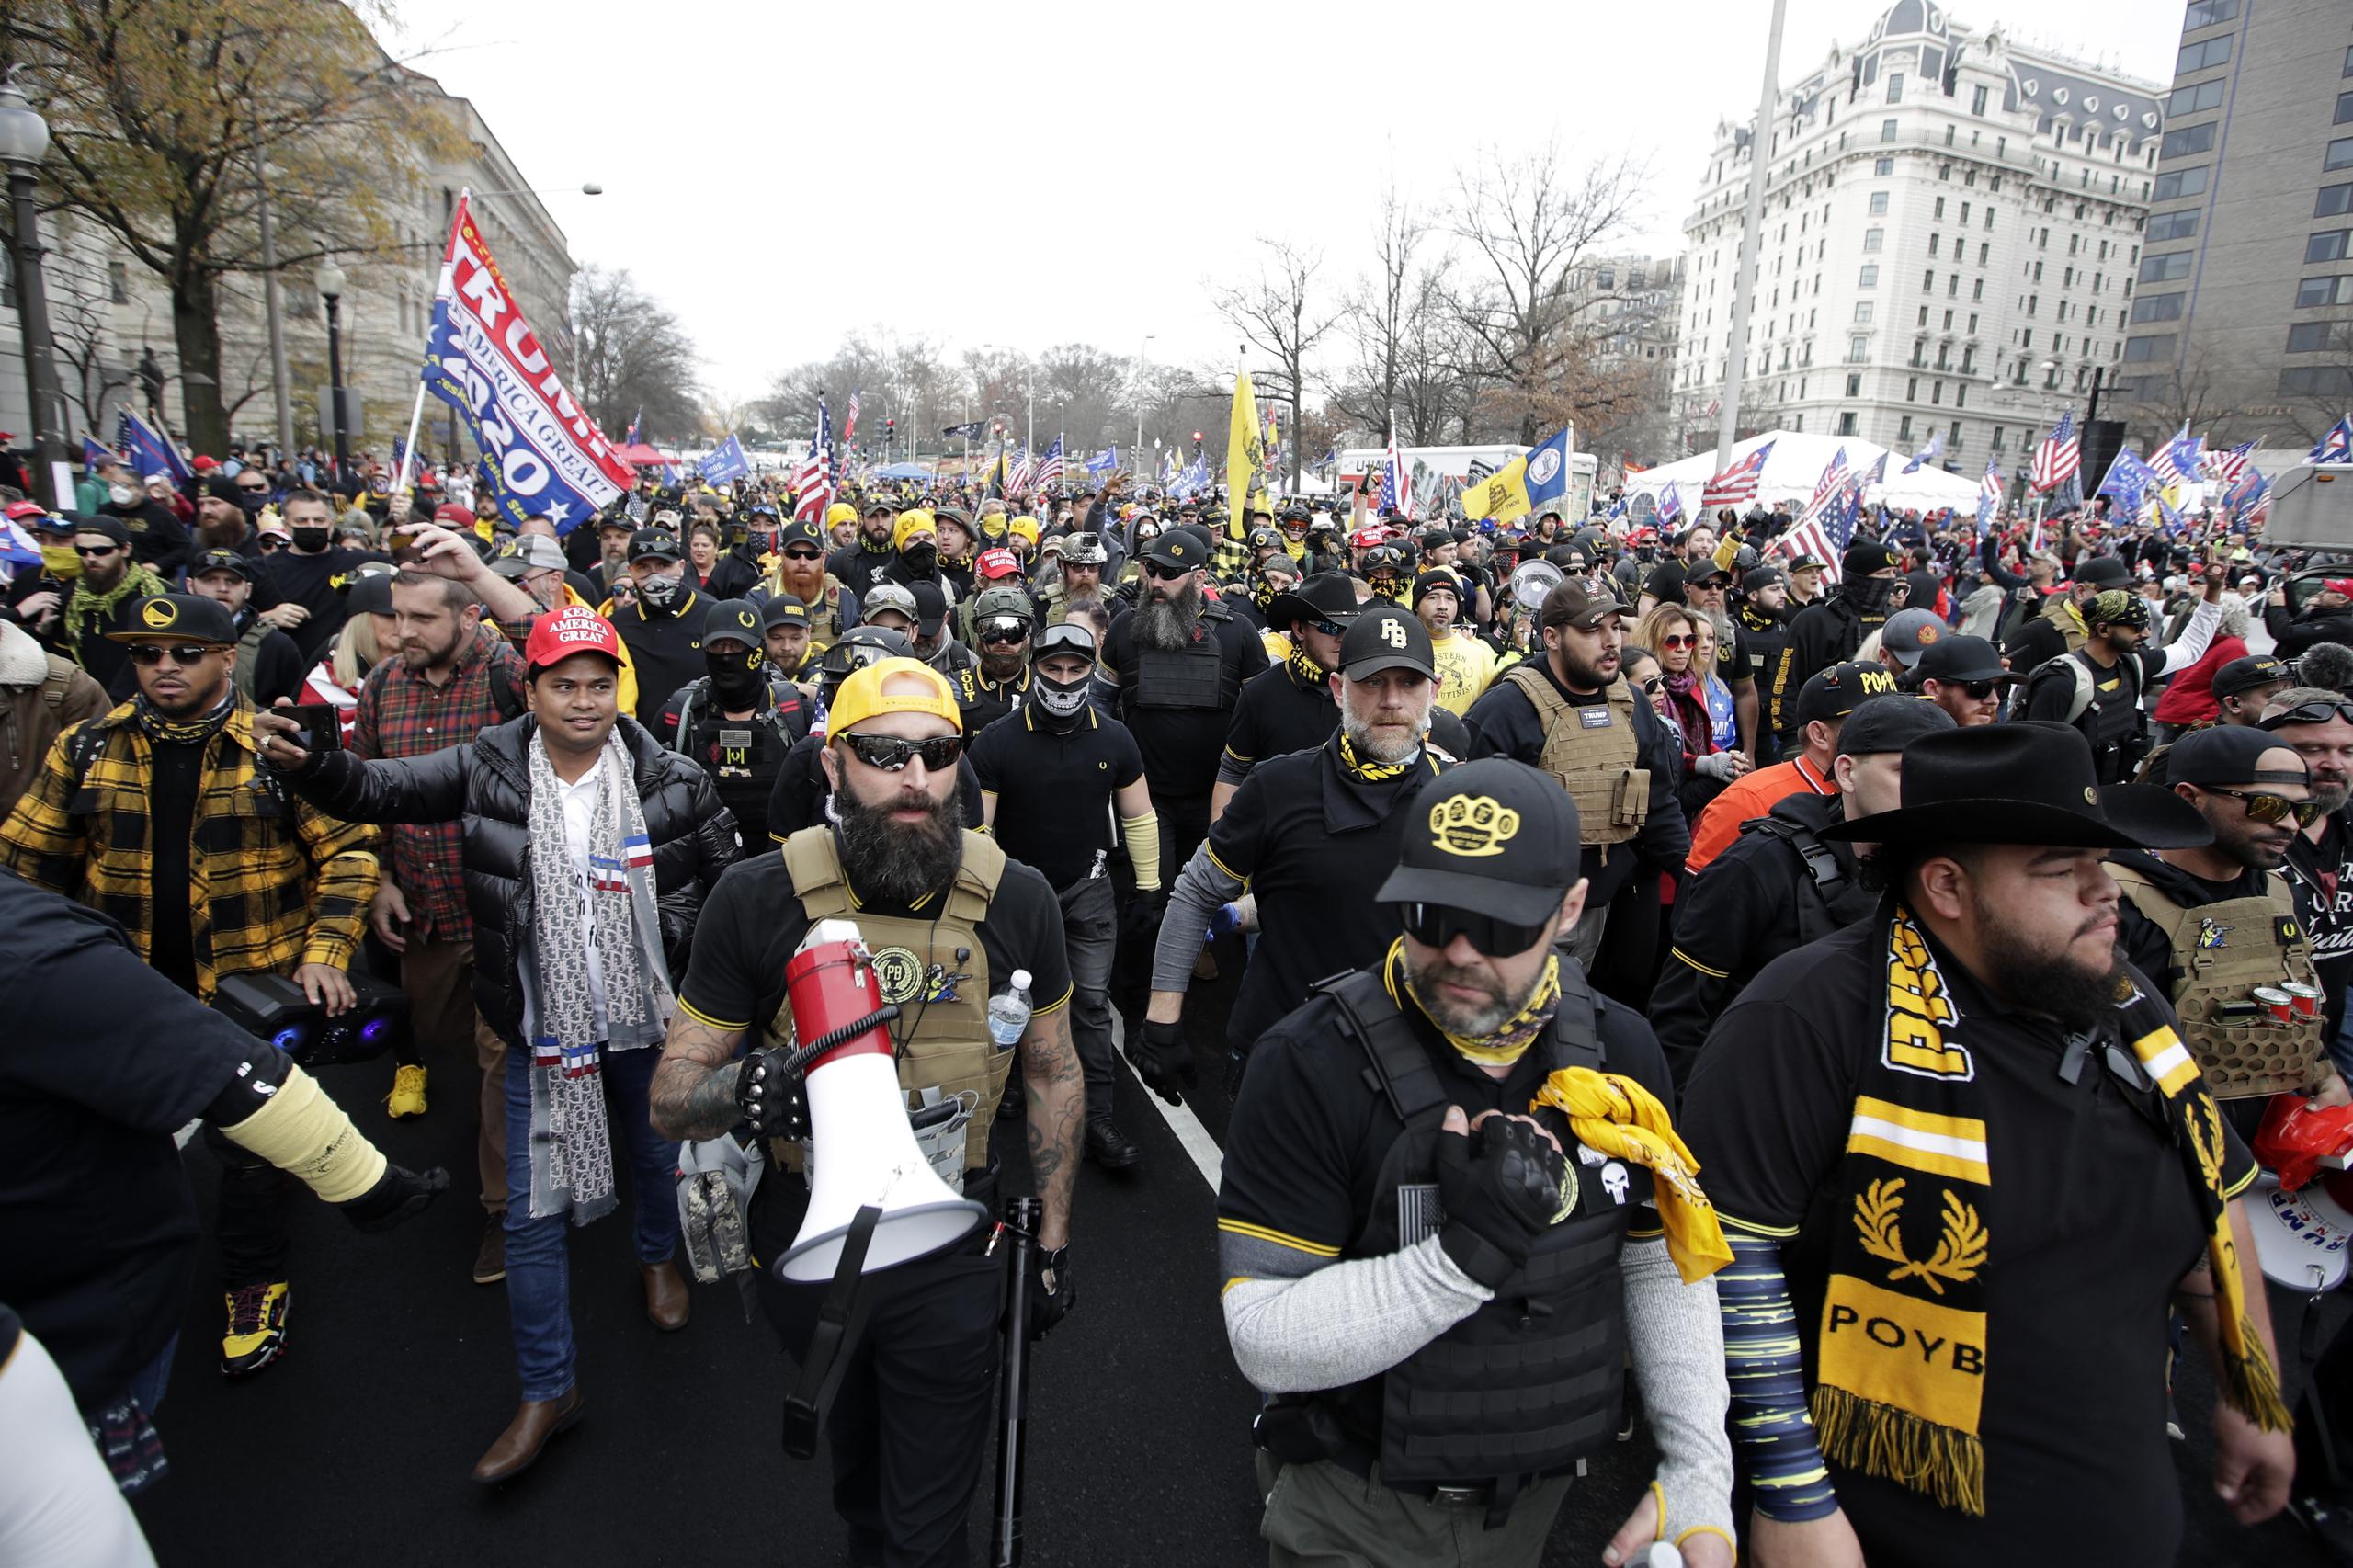 Partidarios del presidente de Estados Unidos, Donald Trump, vestidos con ropa asociada al grupo Proud Boys, durante una marcha en la Freedom Plaza, de Washington, el sábado 12 de diciembre de 2020.